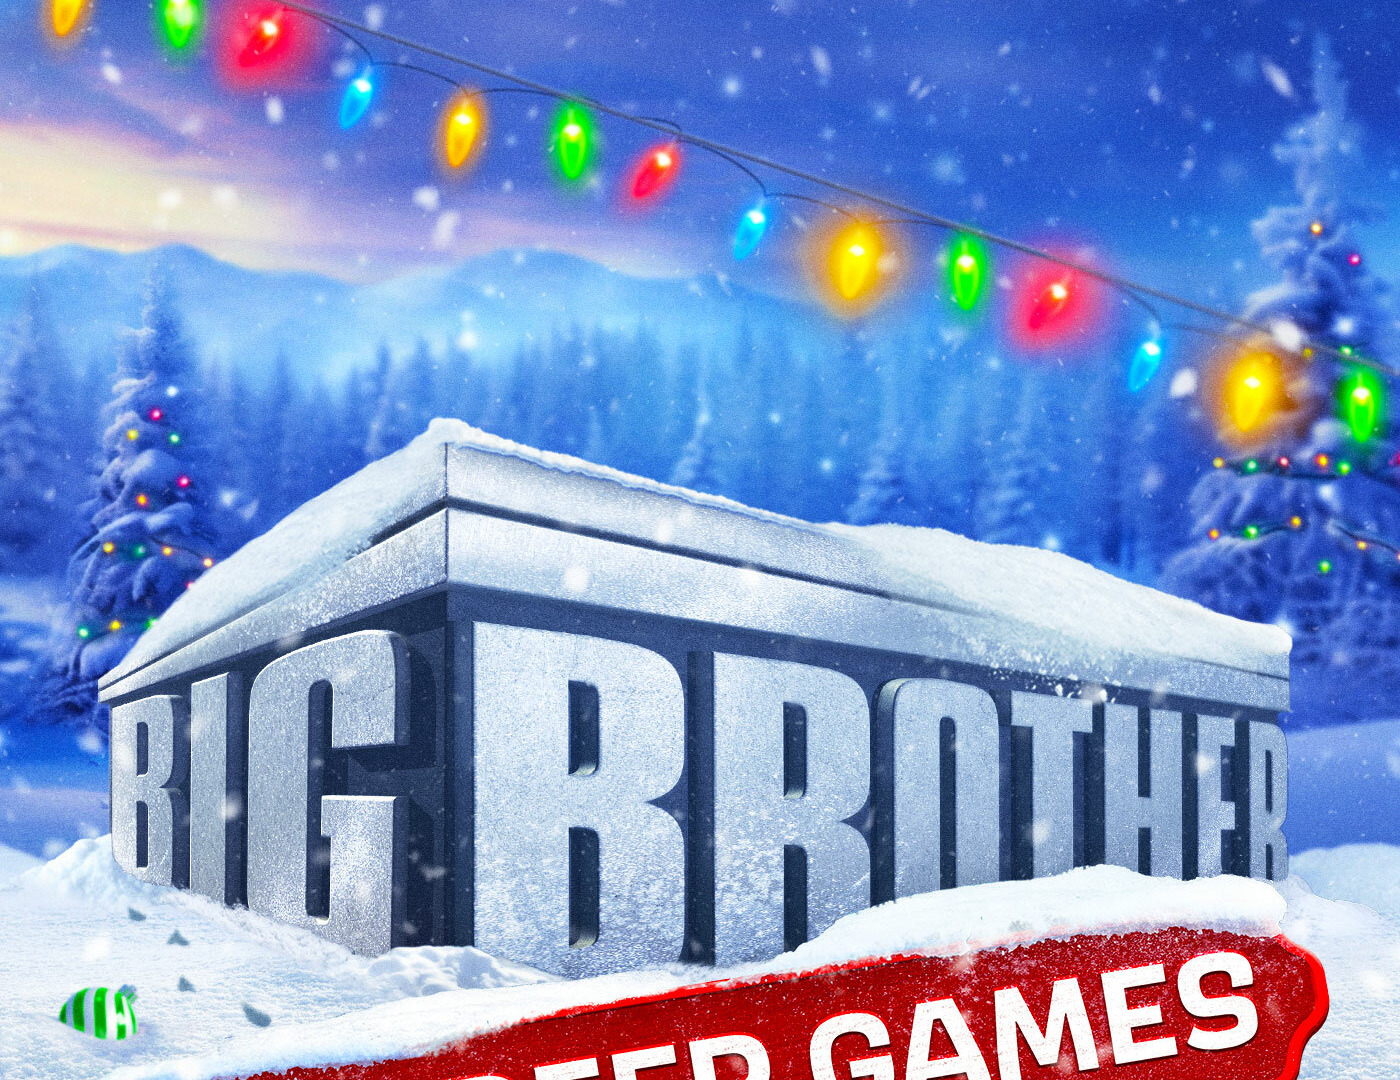 Show Big Brother Reindeer Games